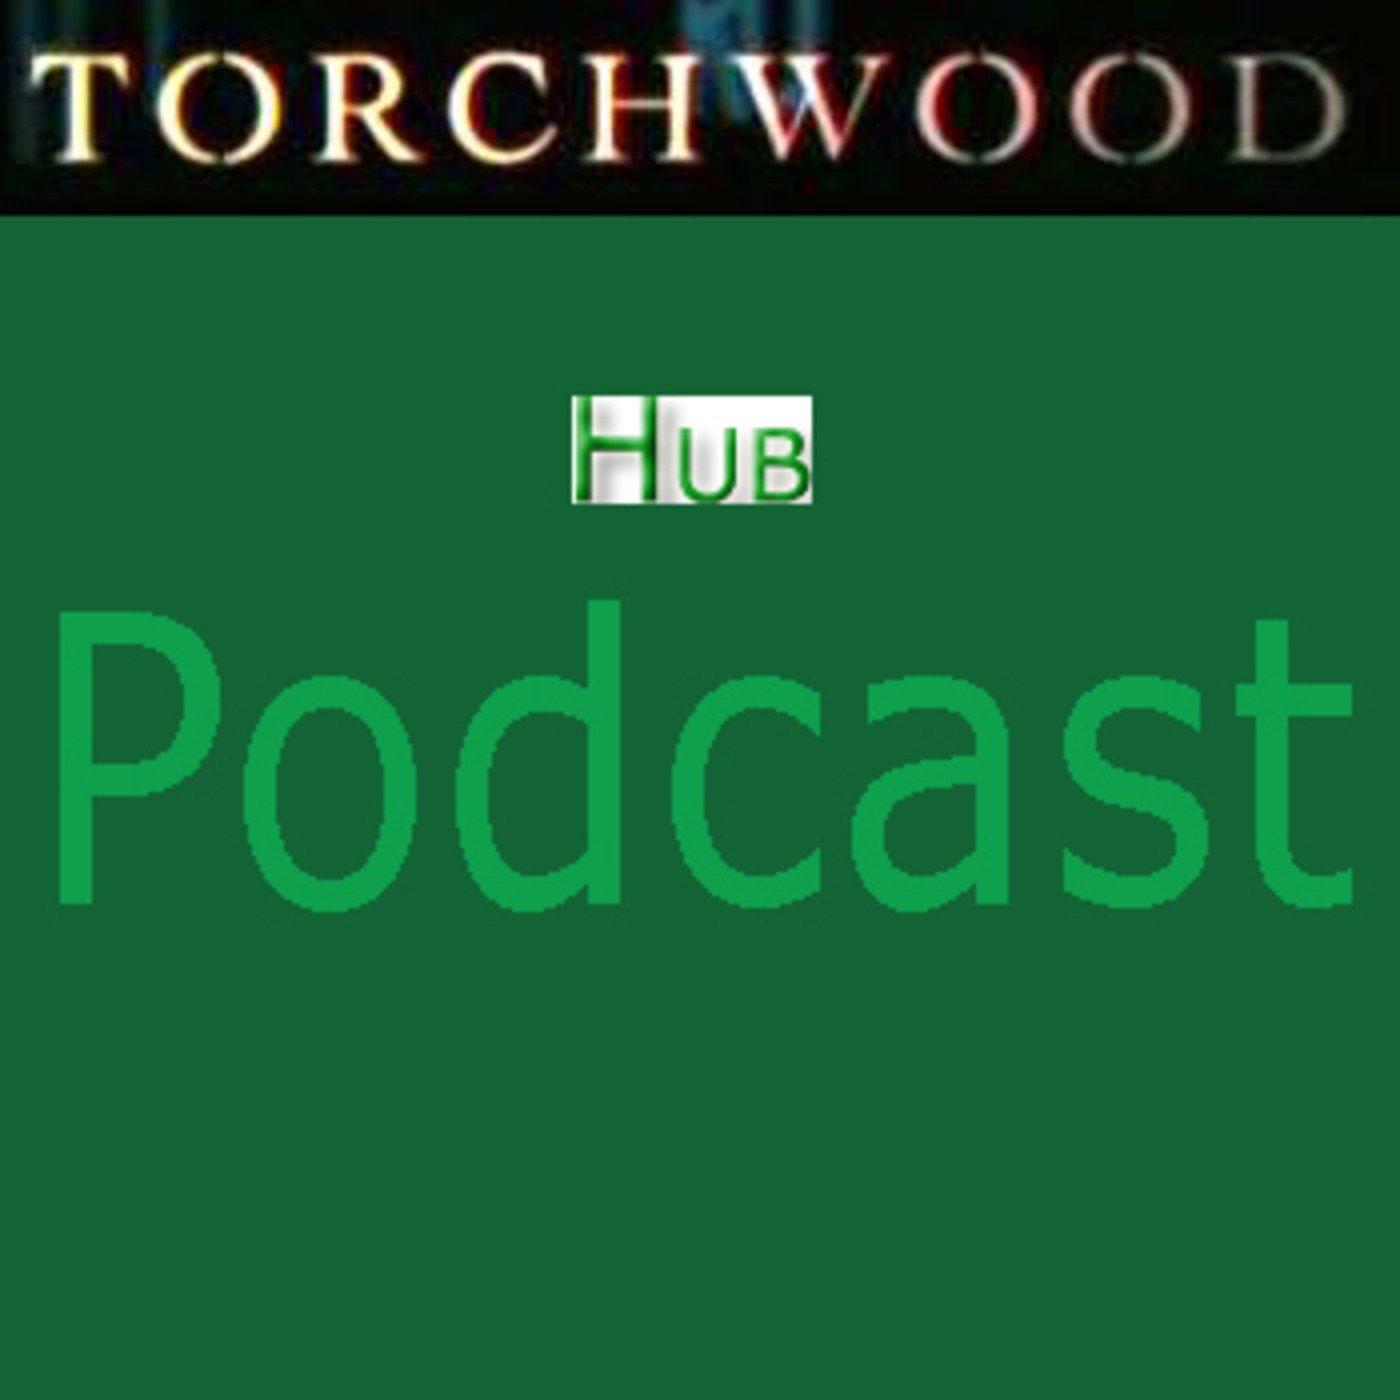 Torchwood Hub podcast